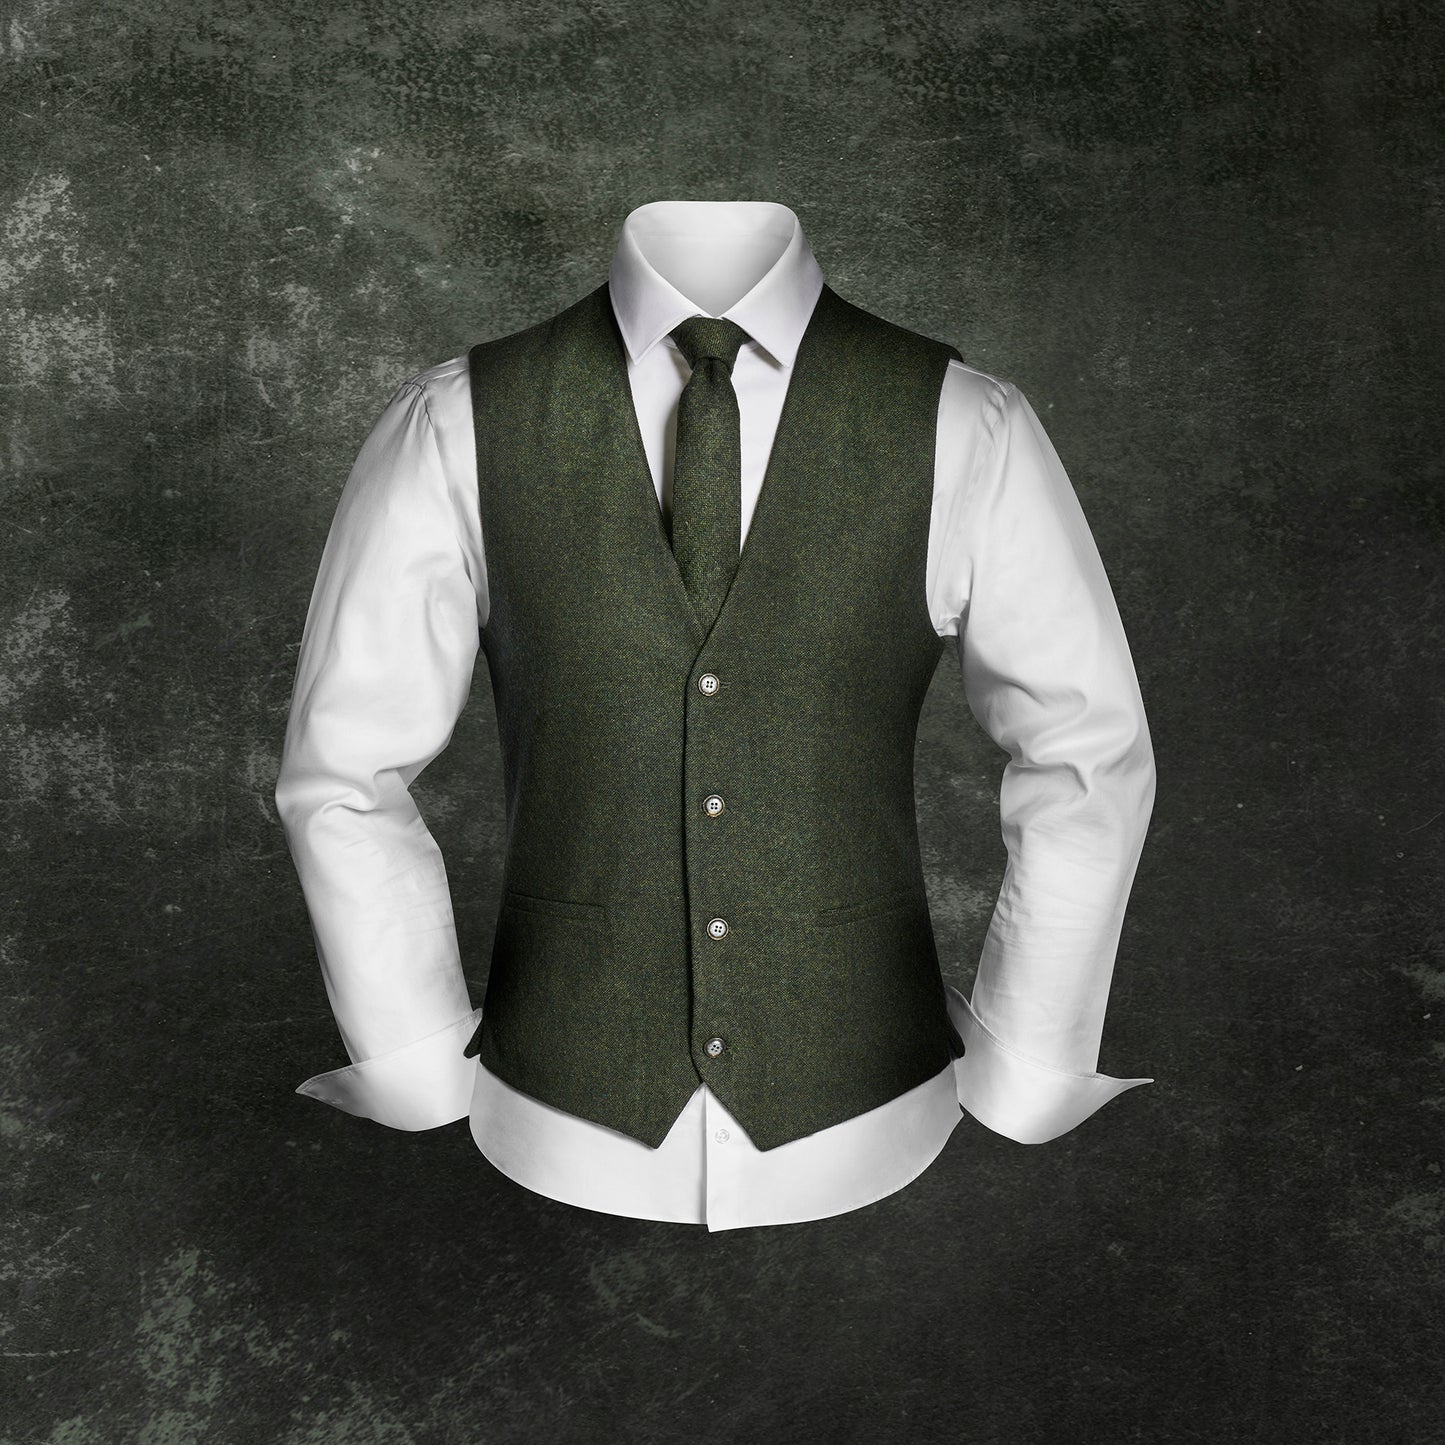 Vintage-Outfit inklusive Weste, Krawatte & Einstecktuch in Wollmischung